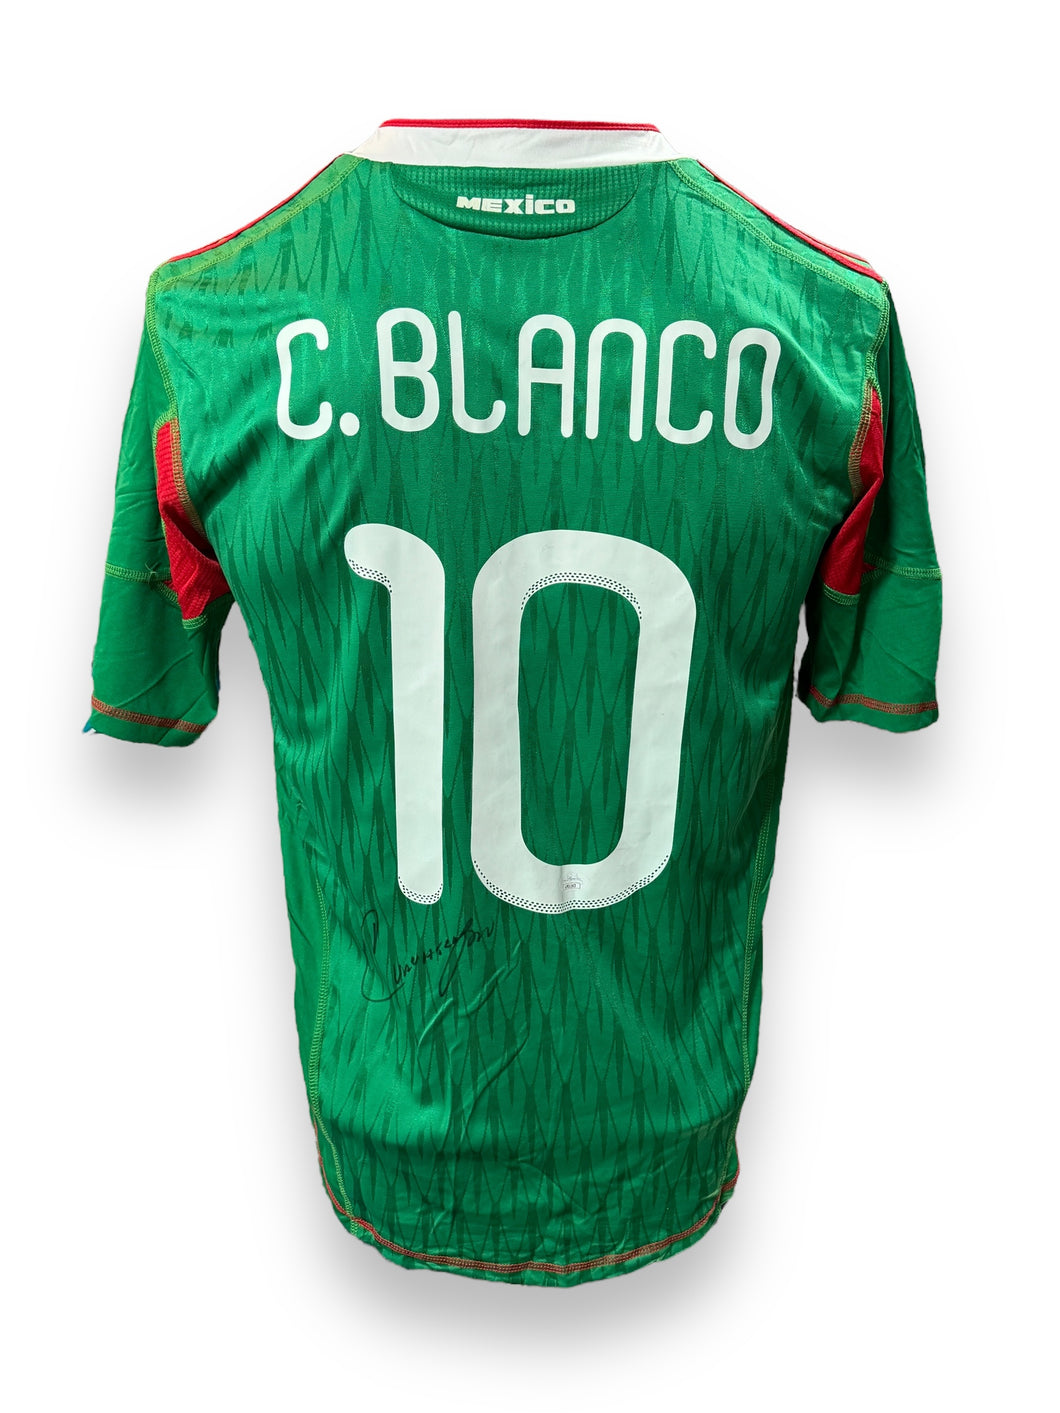 Jersey / Selección Mexicana (Mundial 2010) / Cuauhtémoc Blanco